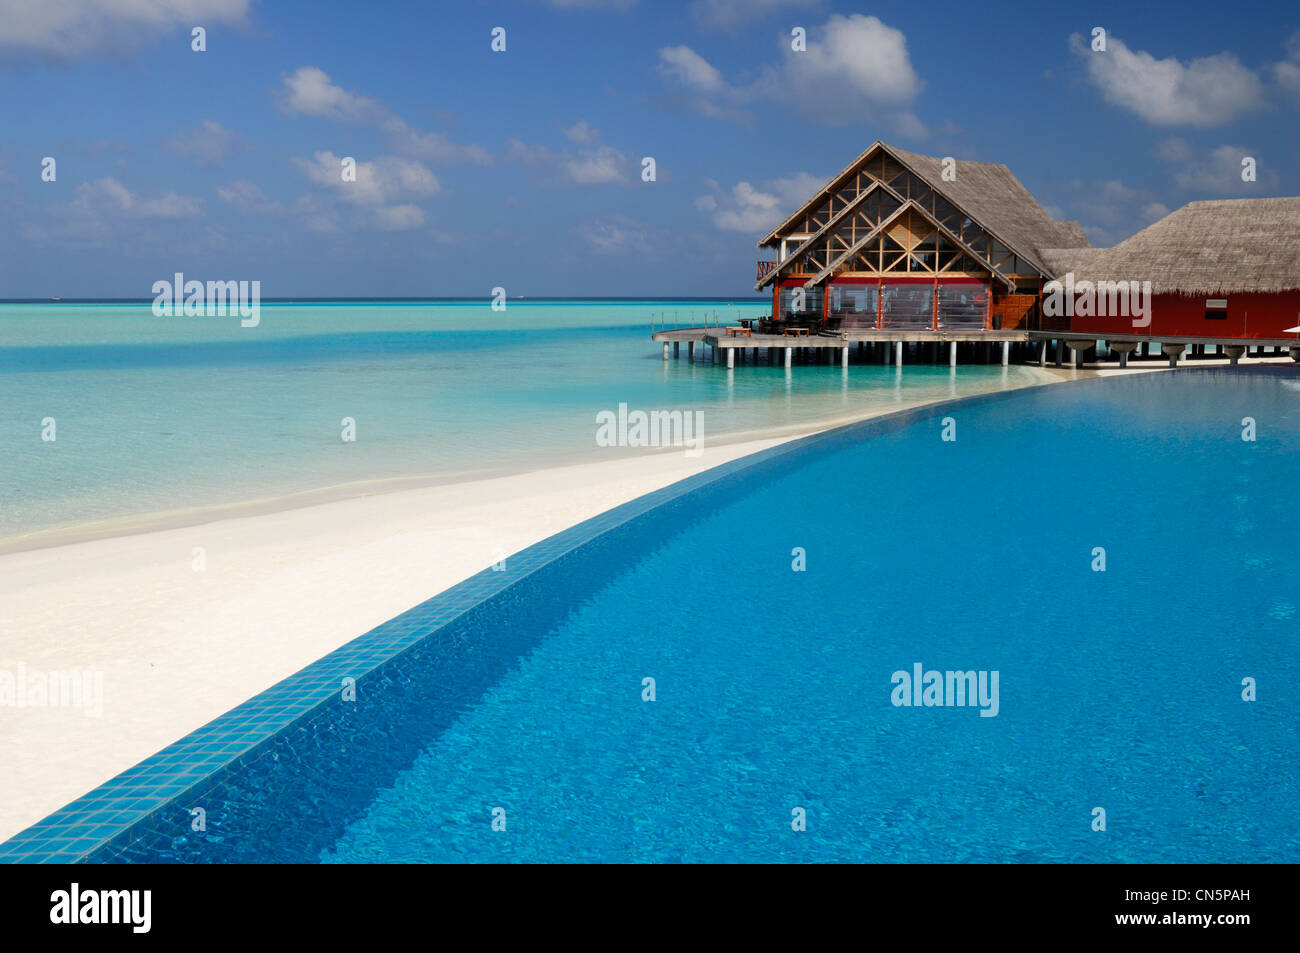 Maldive, South Male Atoll, Dhigu Island, Anantara Resort and Spa Hotel, piscina e spiaggia di sabbia bianca sovrastata da un Foto Stock